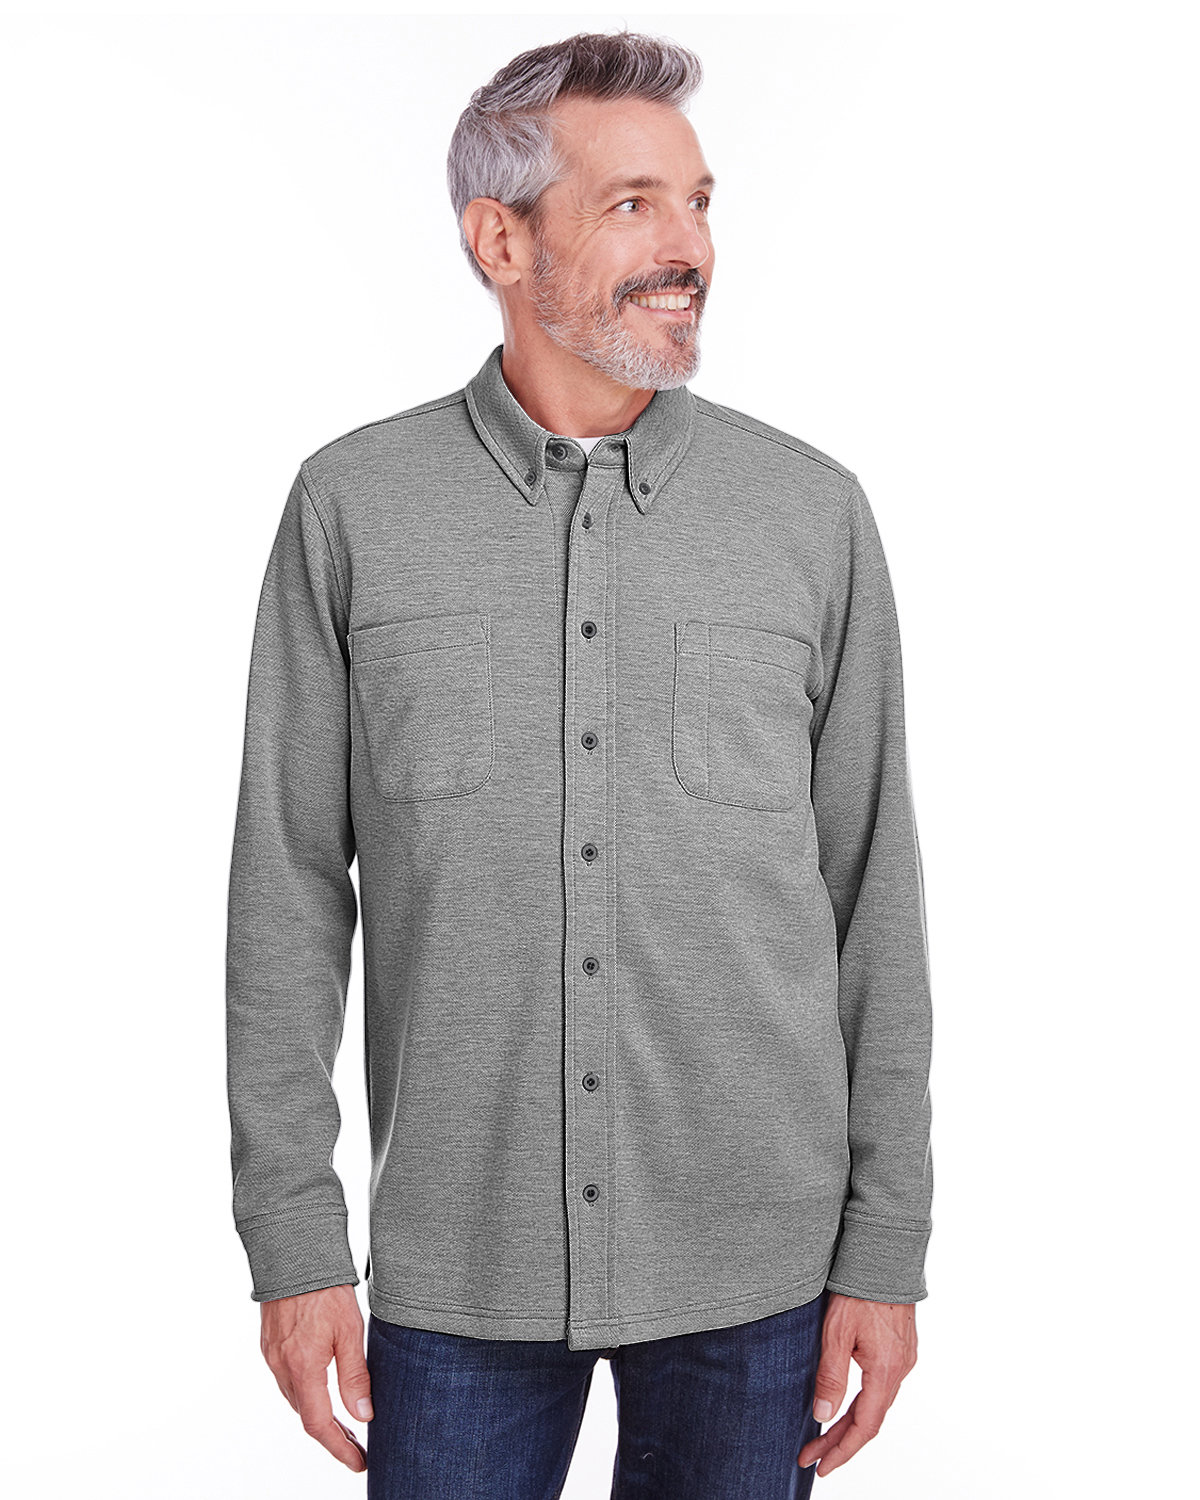 Adult Stainbloc™ Pique Fleece Shirt-Jacket-